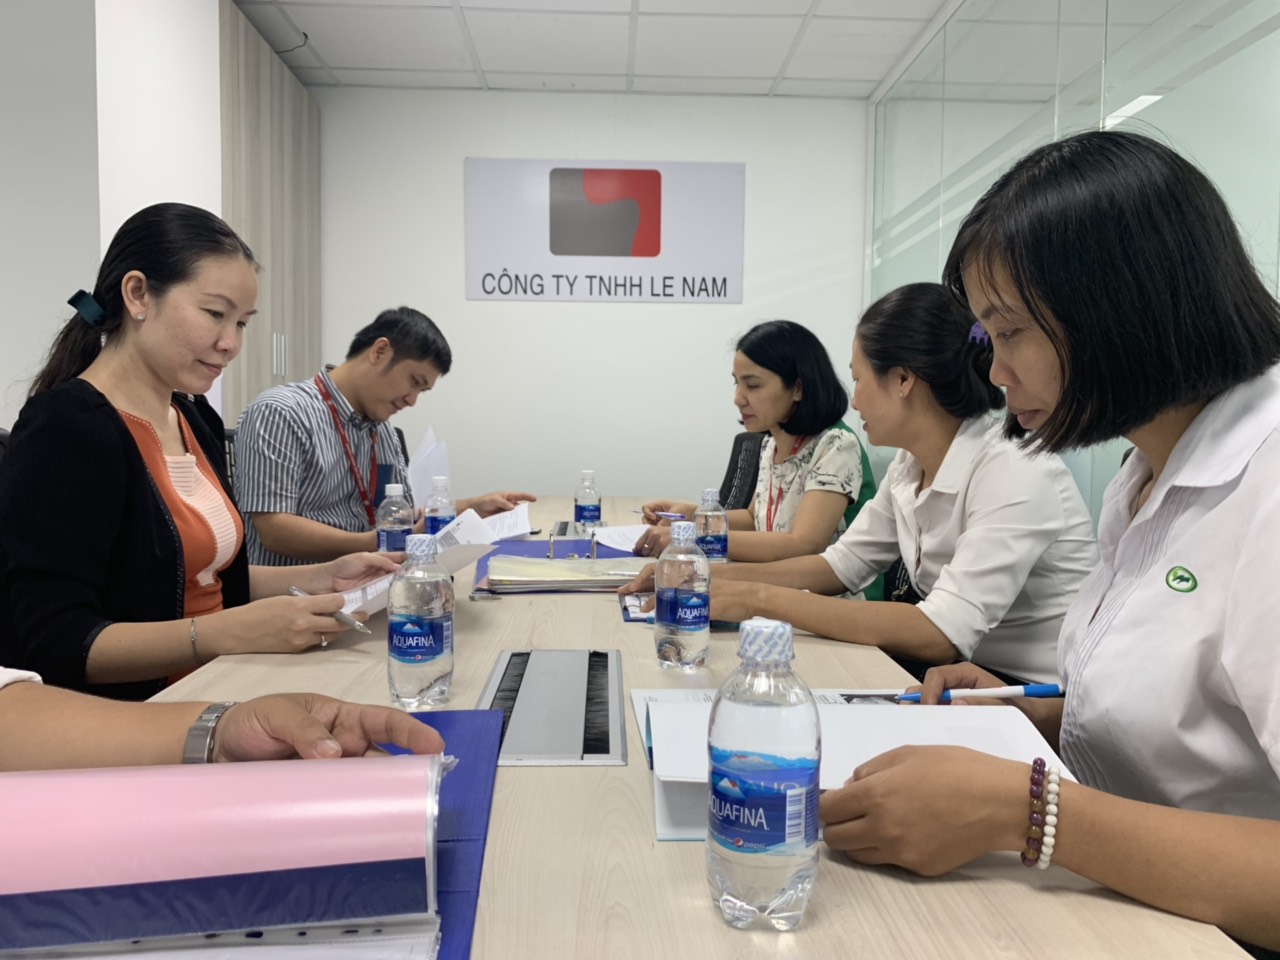 Tín hiệu vui từ việc triển khai KPI tại Công ty TNHH Lê Nam